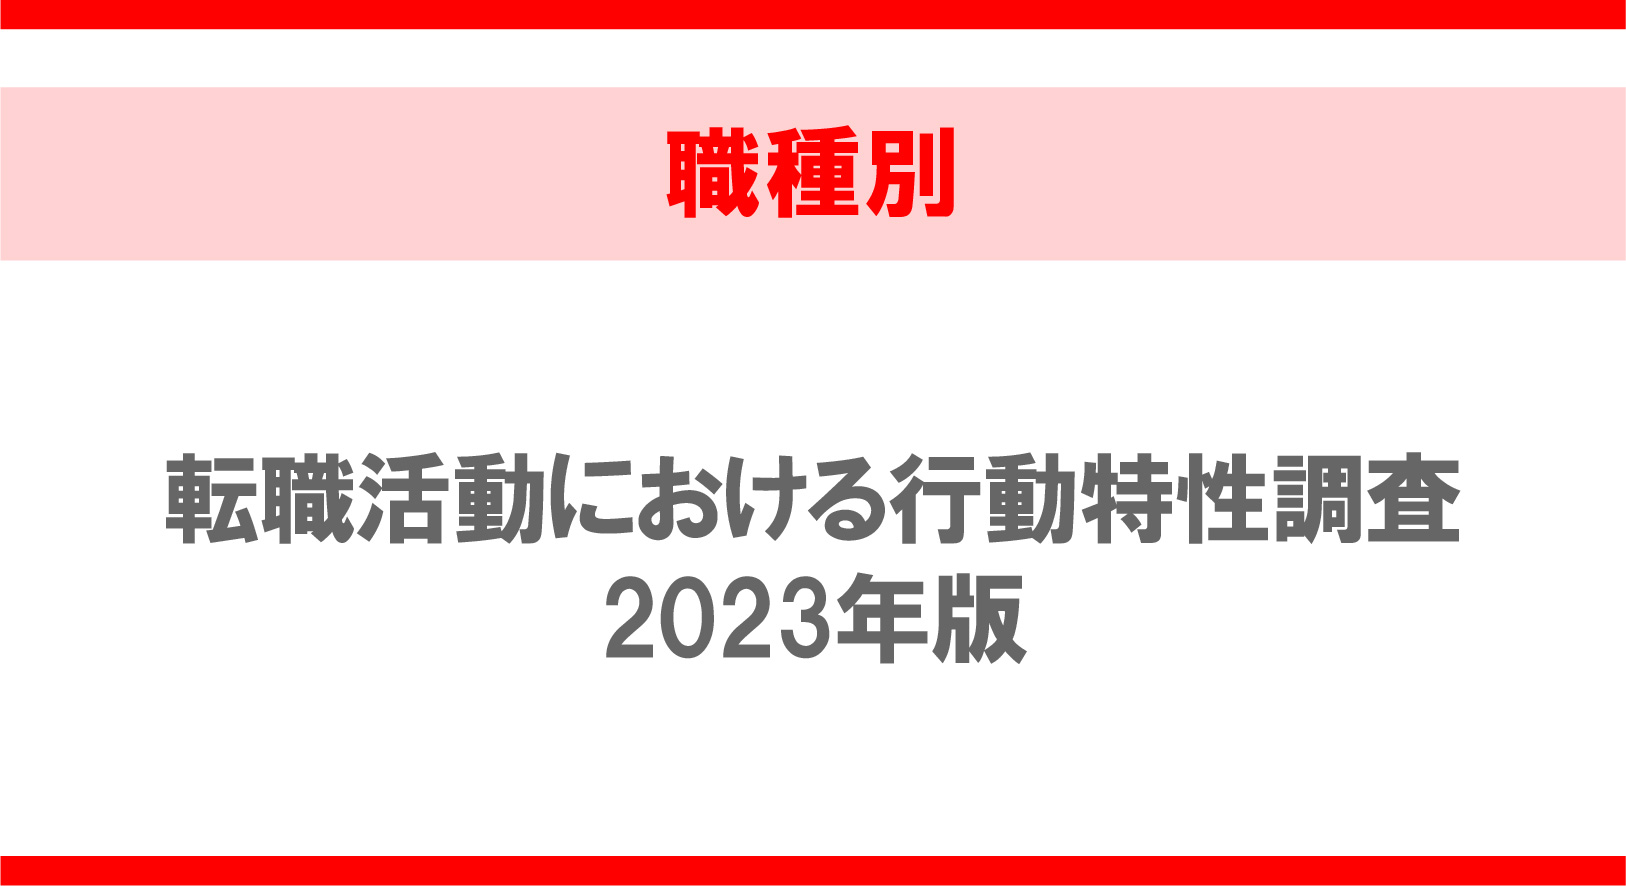 【職種別】転職活動における行動特性調査2023年版